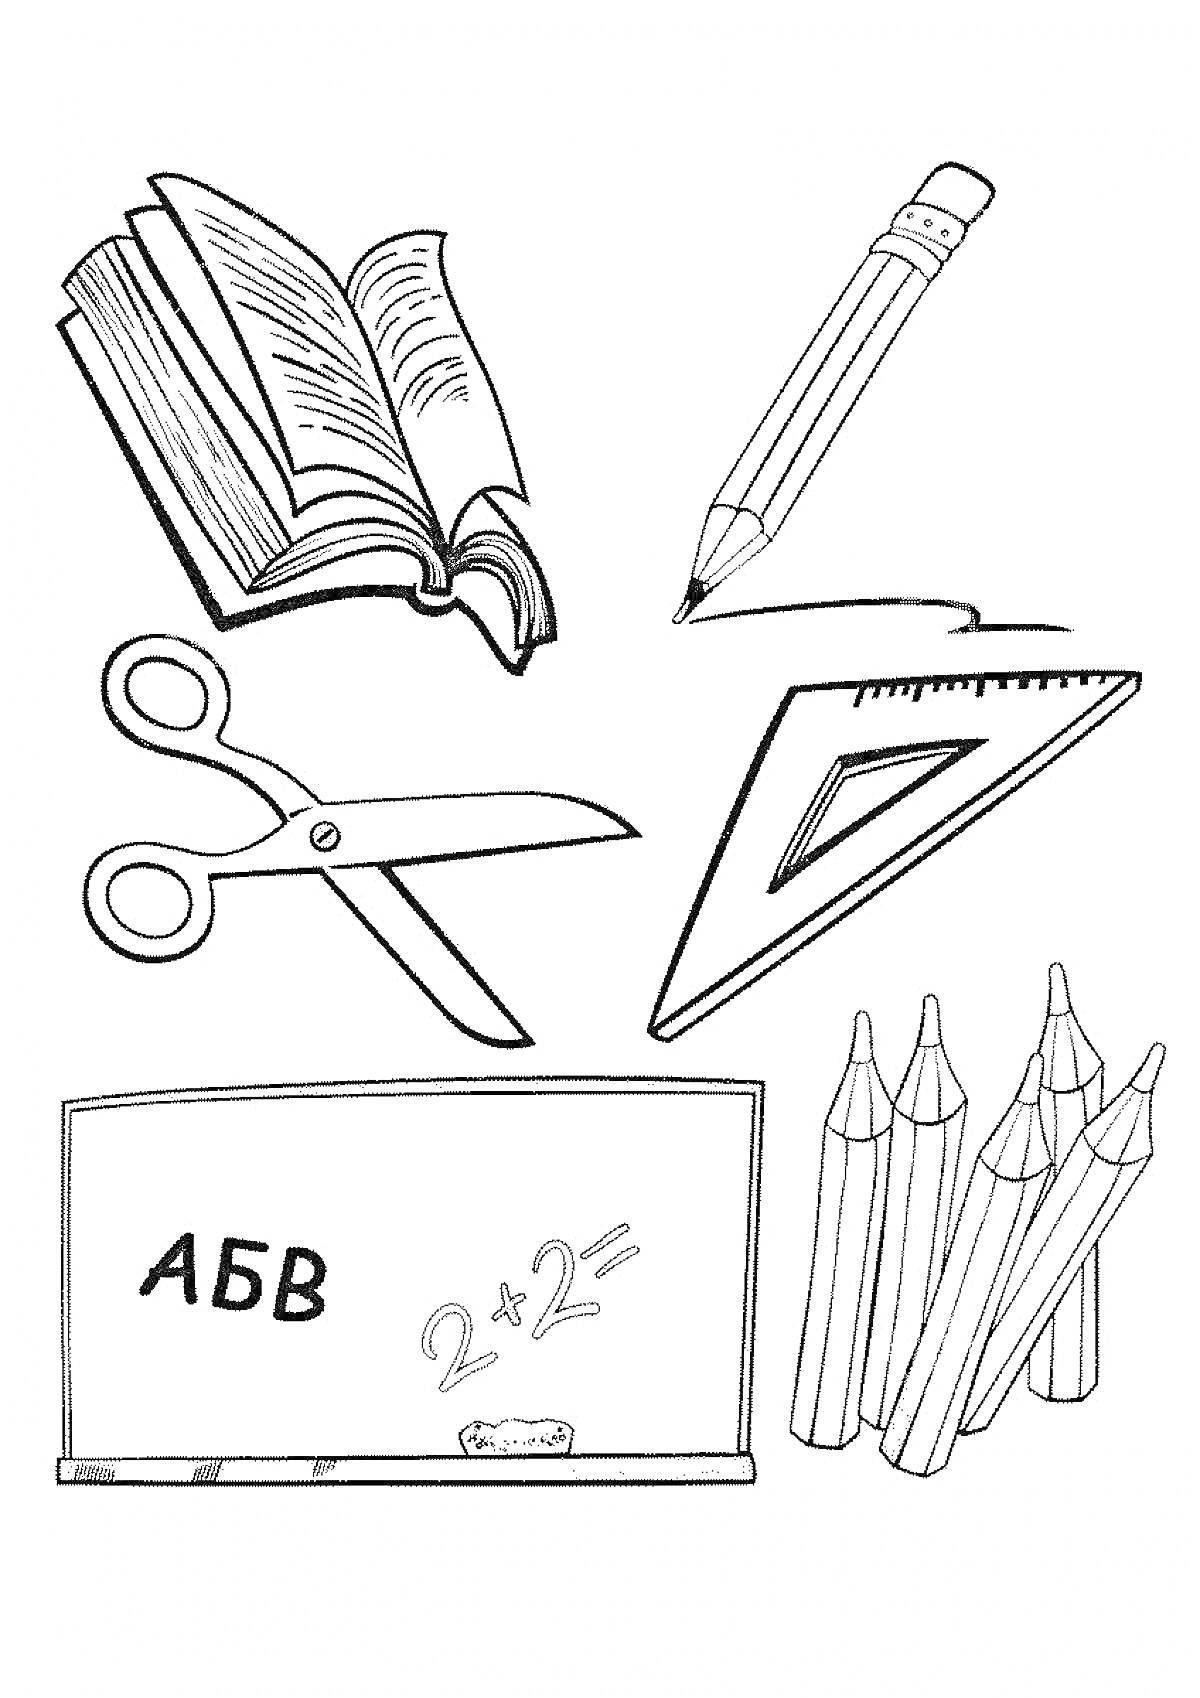 Открытая книга, карандаш, ножницы, угольник, школьная доска с мелом и маркерами